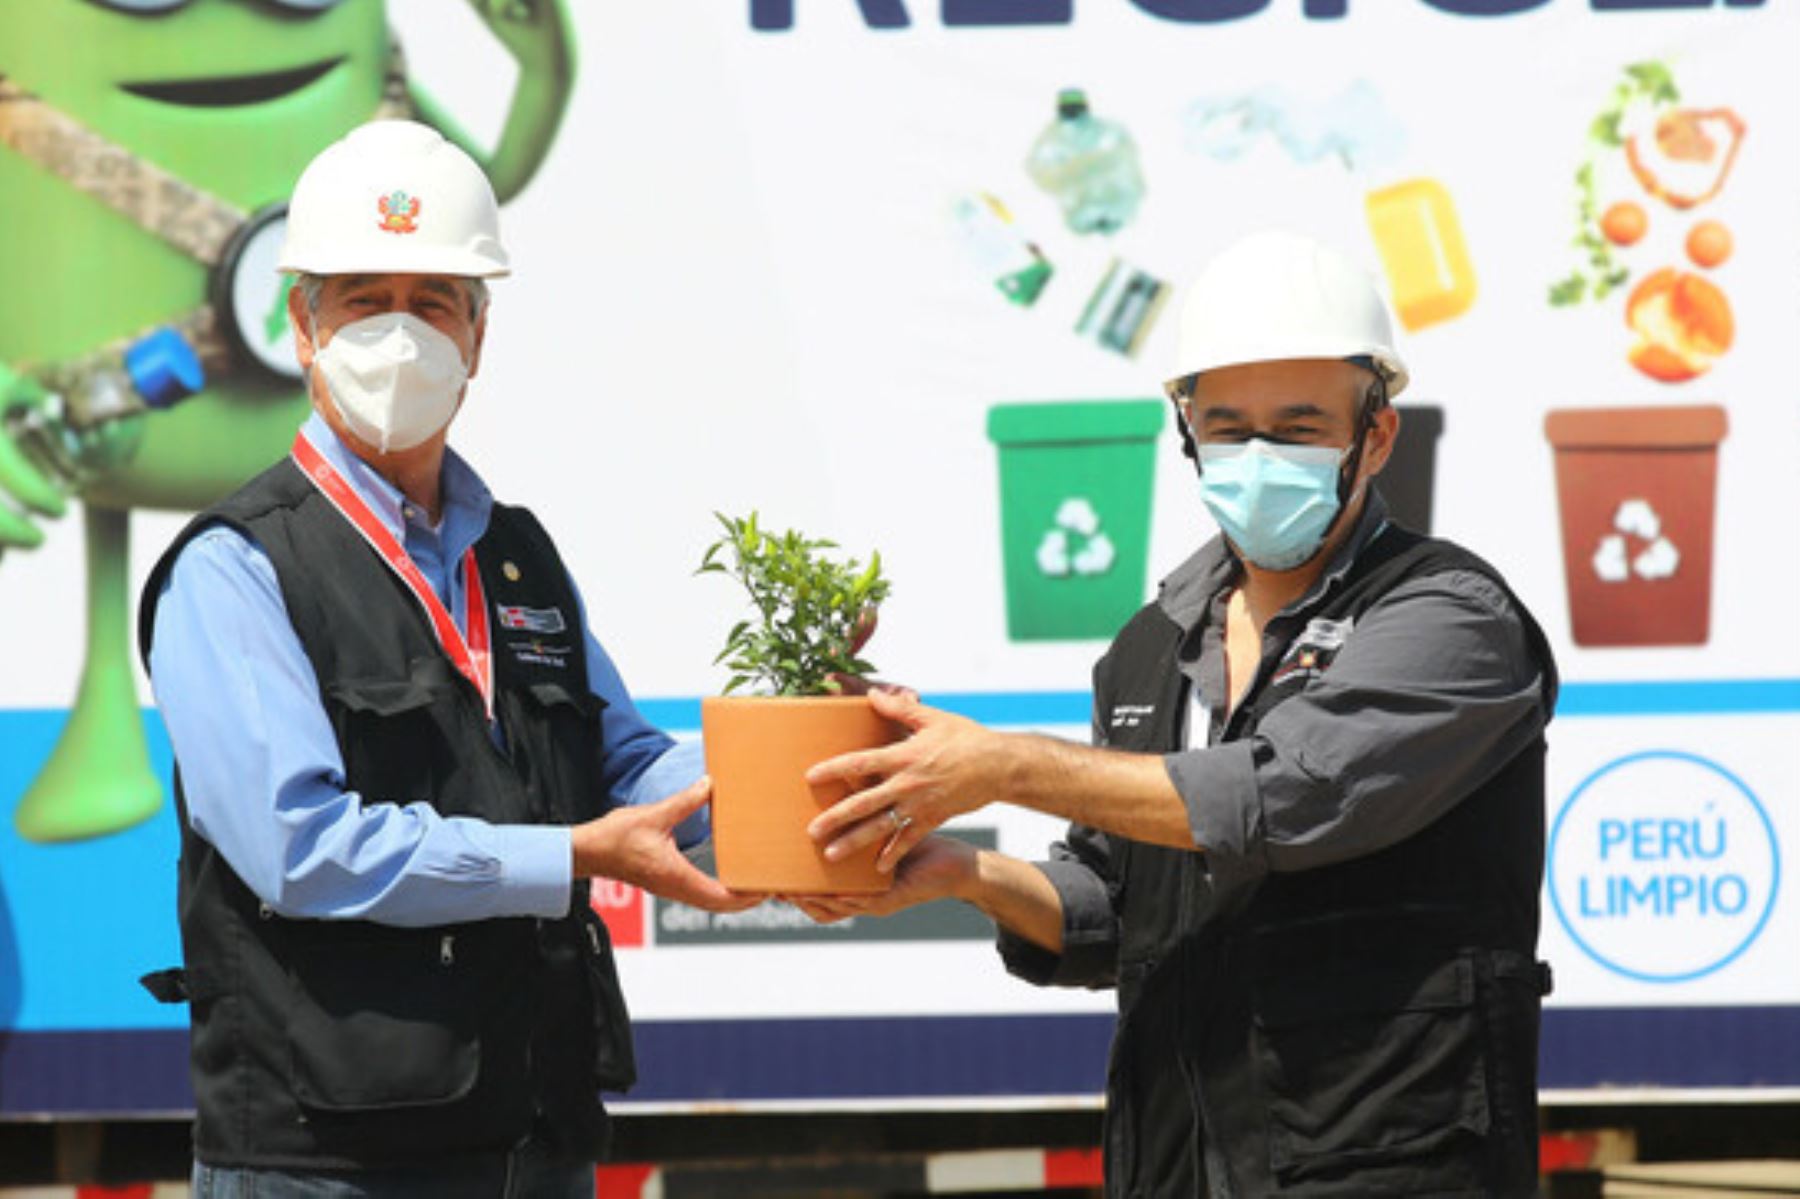 El presidente Francisco Sagasti participó en la inauguración del sistema integral de gestión de residuos sólidos en Huaral. Foto: ANDINA/Minam